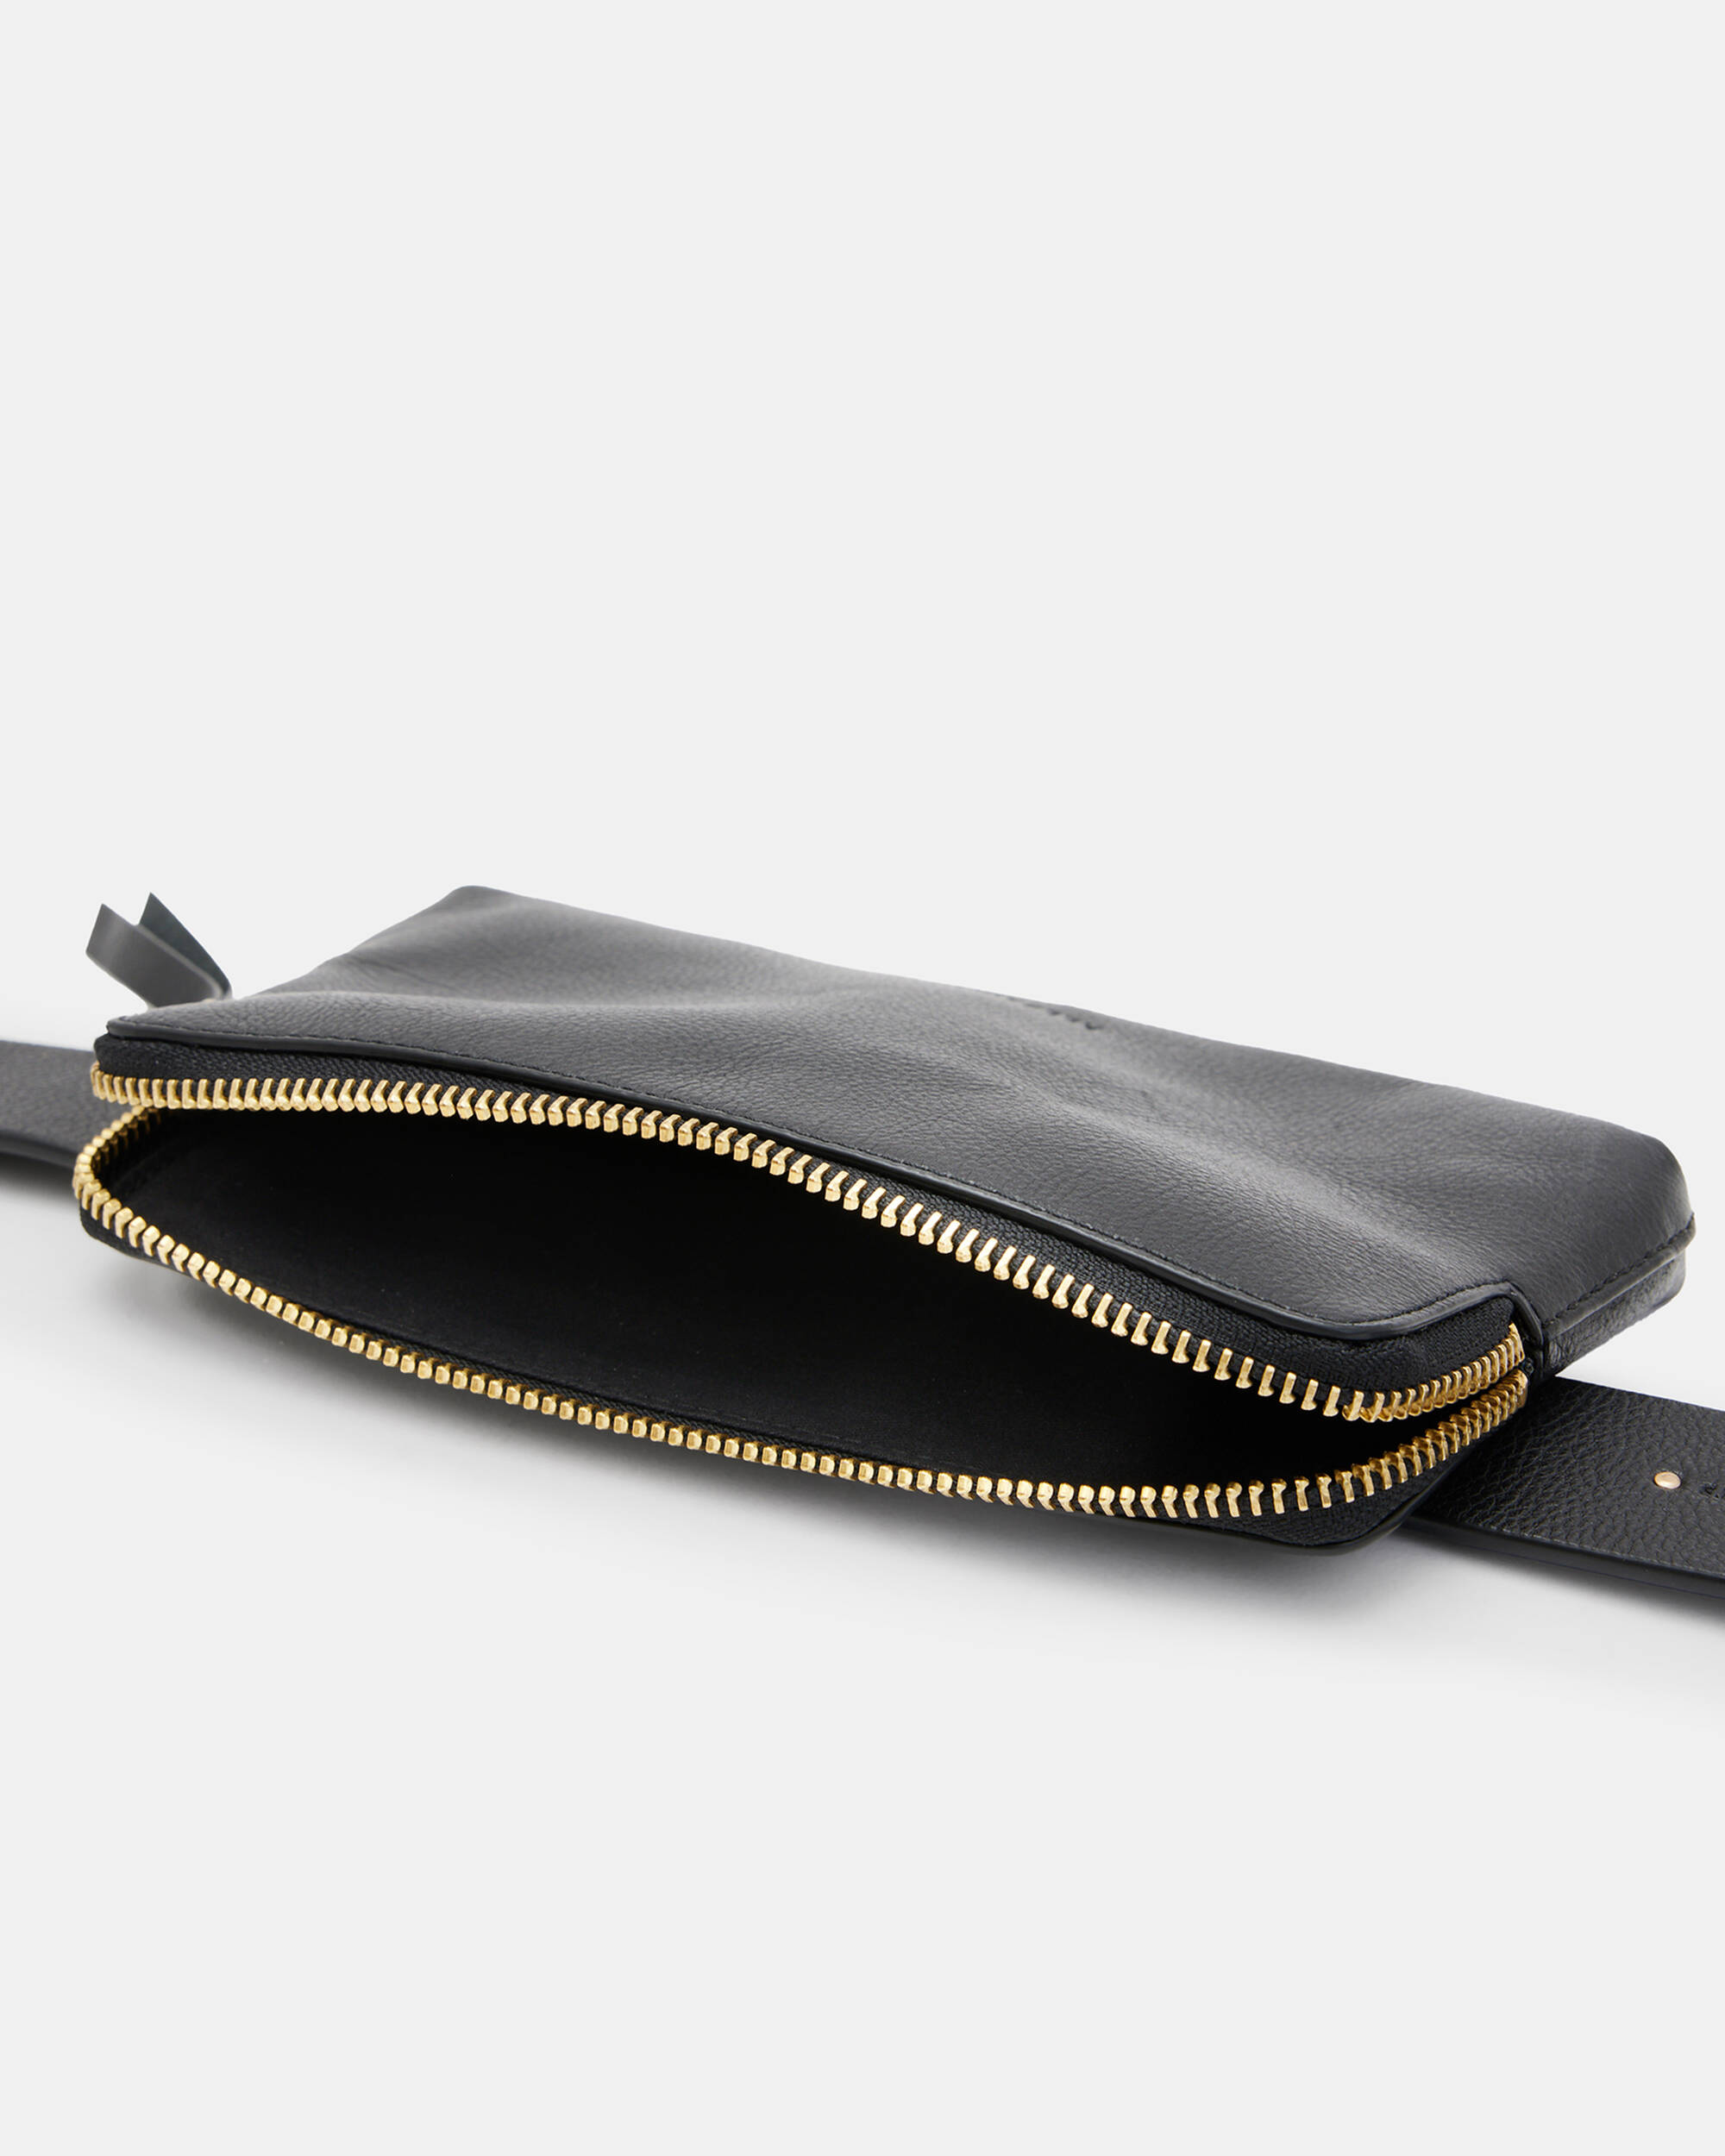 Erma Leather Bag Belt  large image number 3